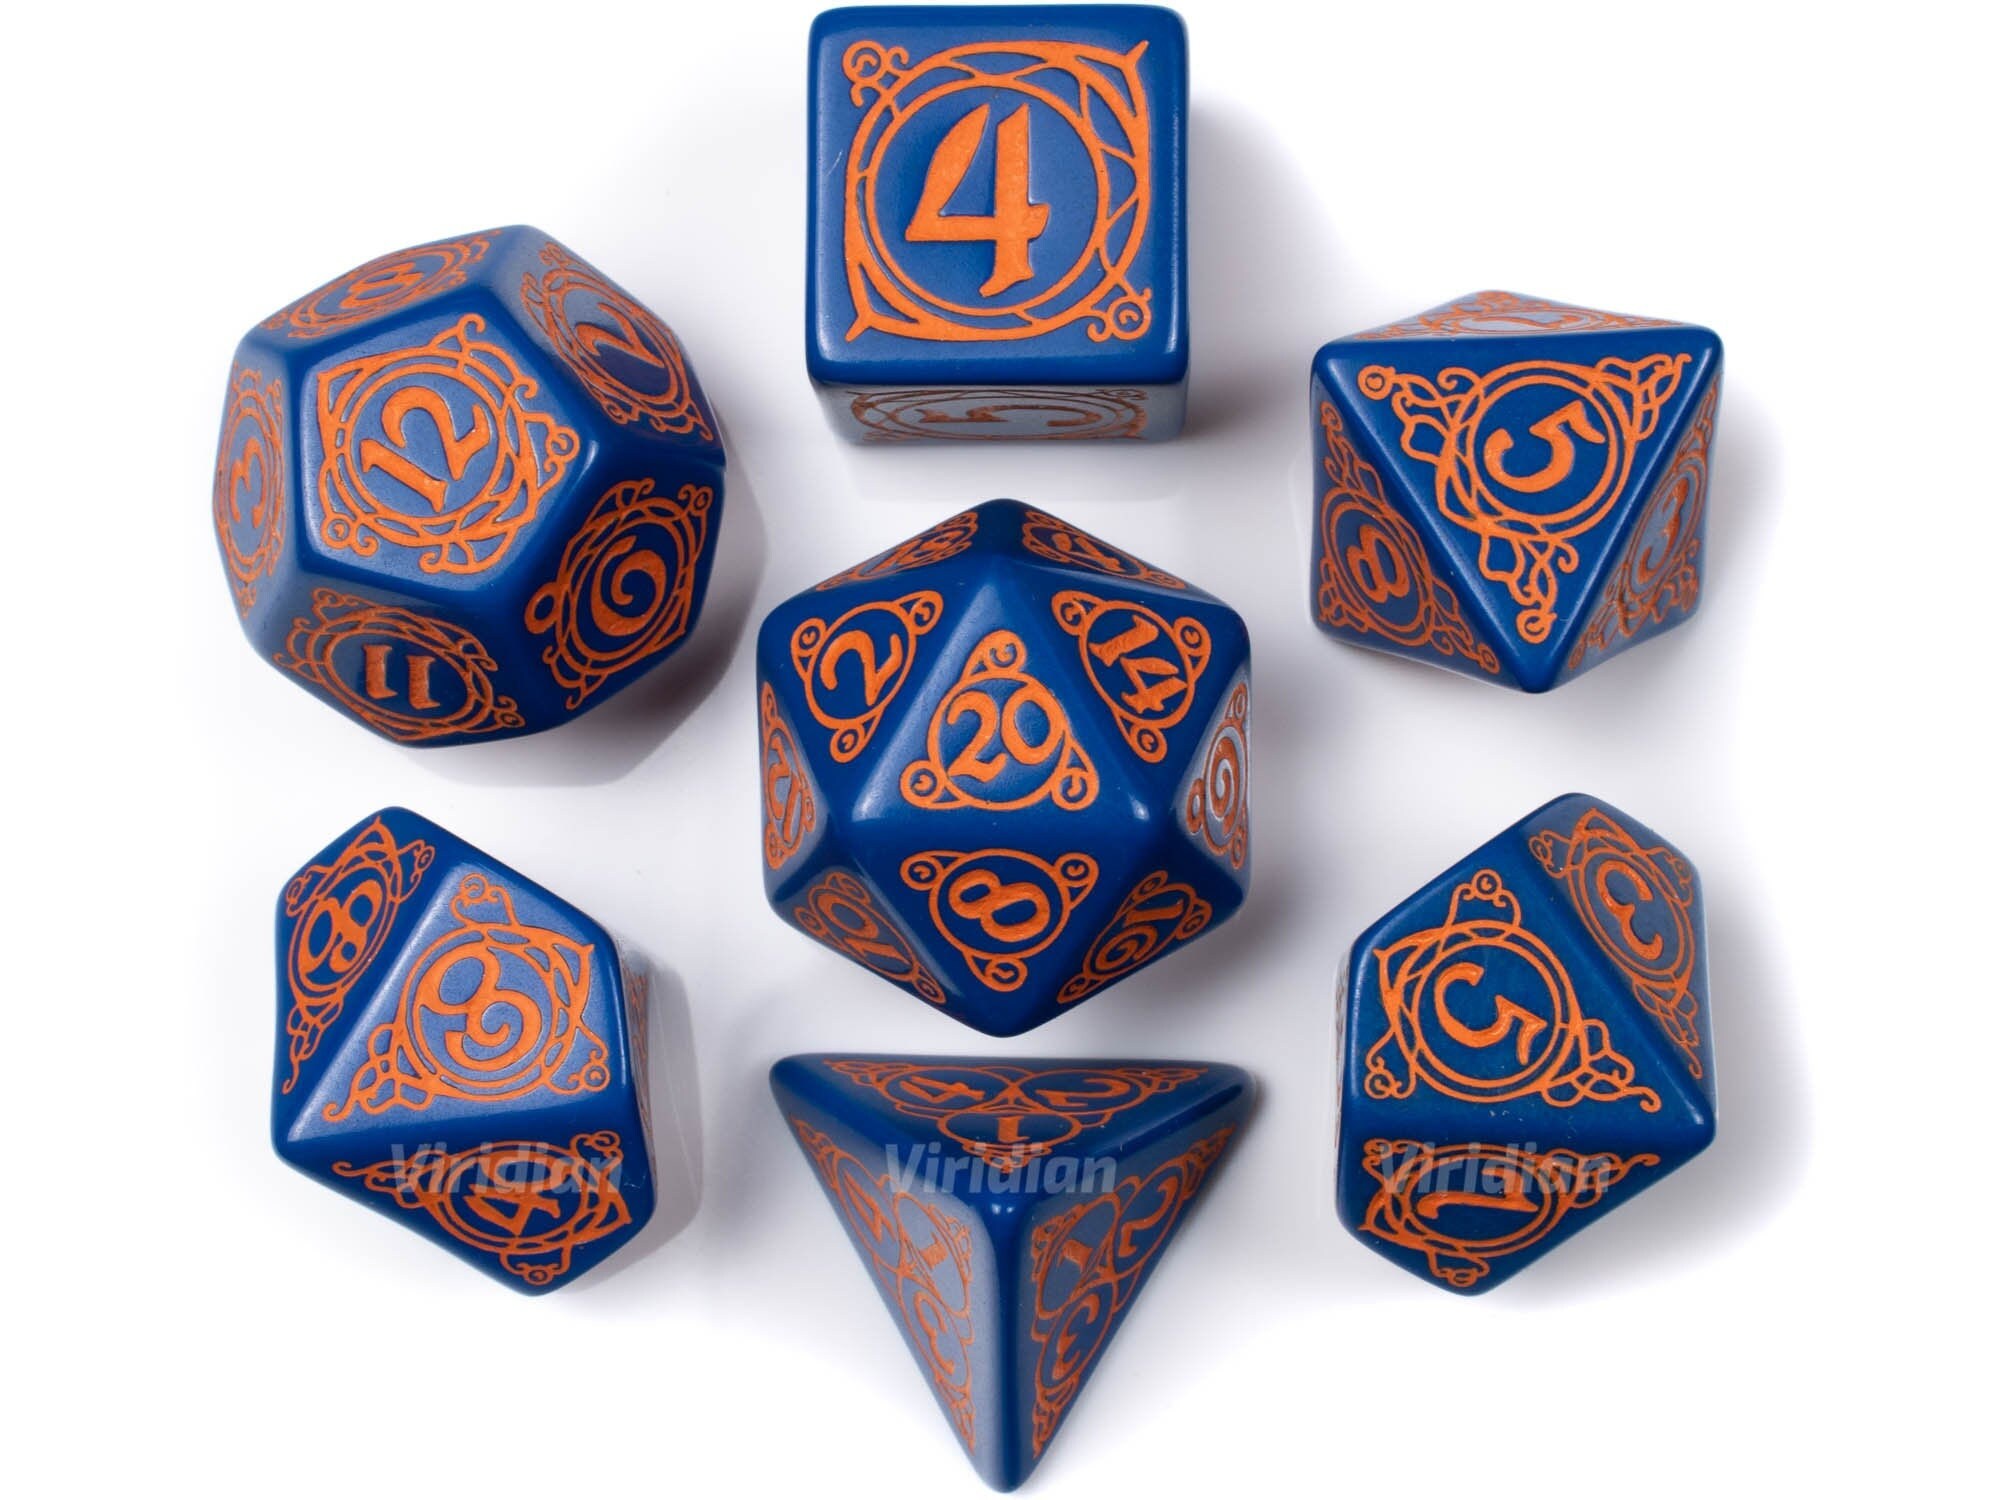 Wizard Dark-blue & orange Dice Set 